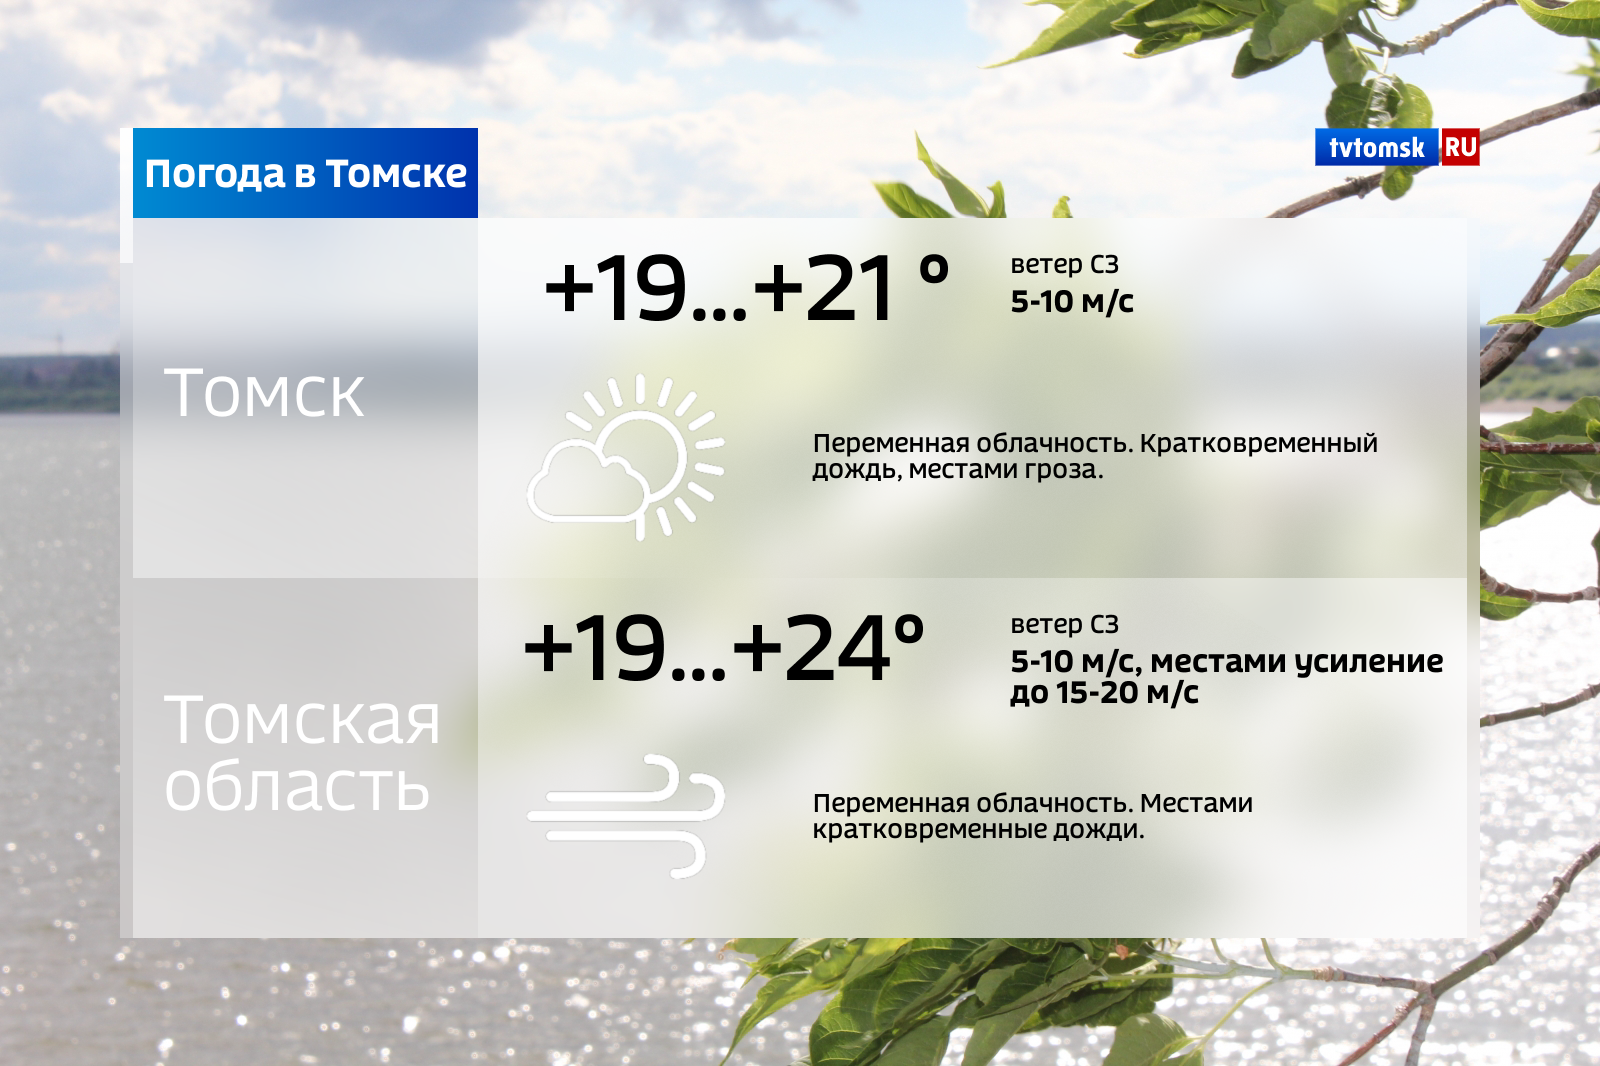 Погода в томском. Погода в Томске. Прогноз погоды в Томске. Погода в Томске сегодня. Погода в Томске сейчас.